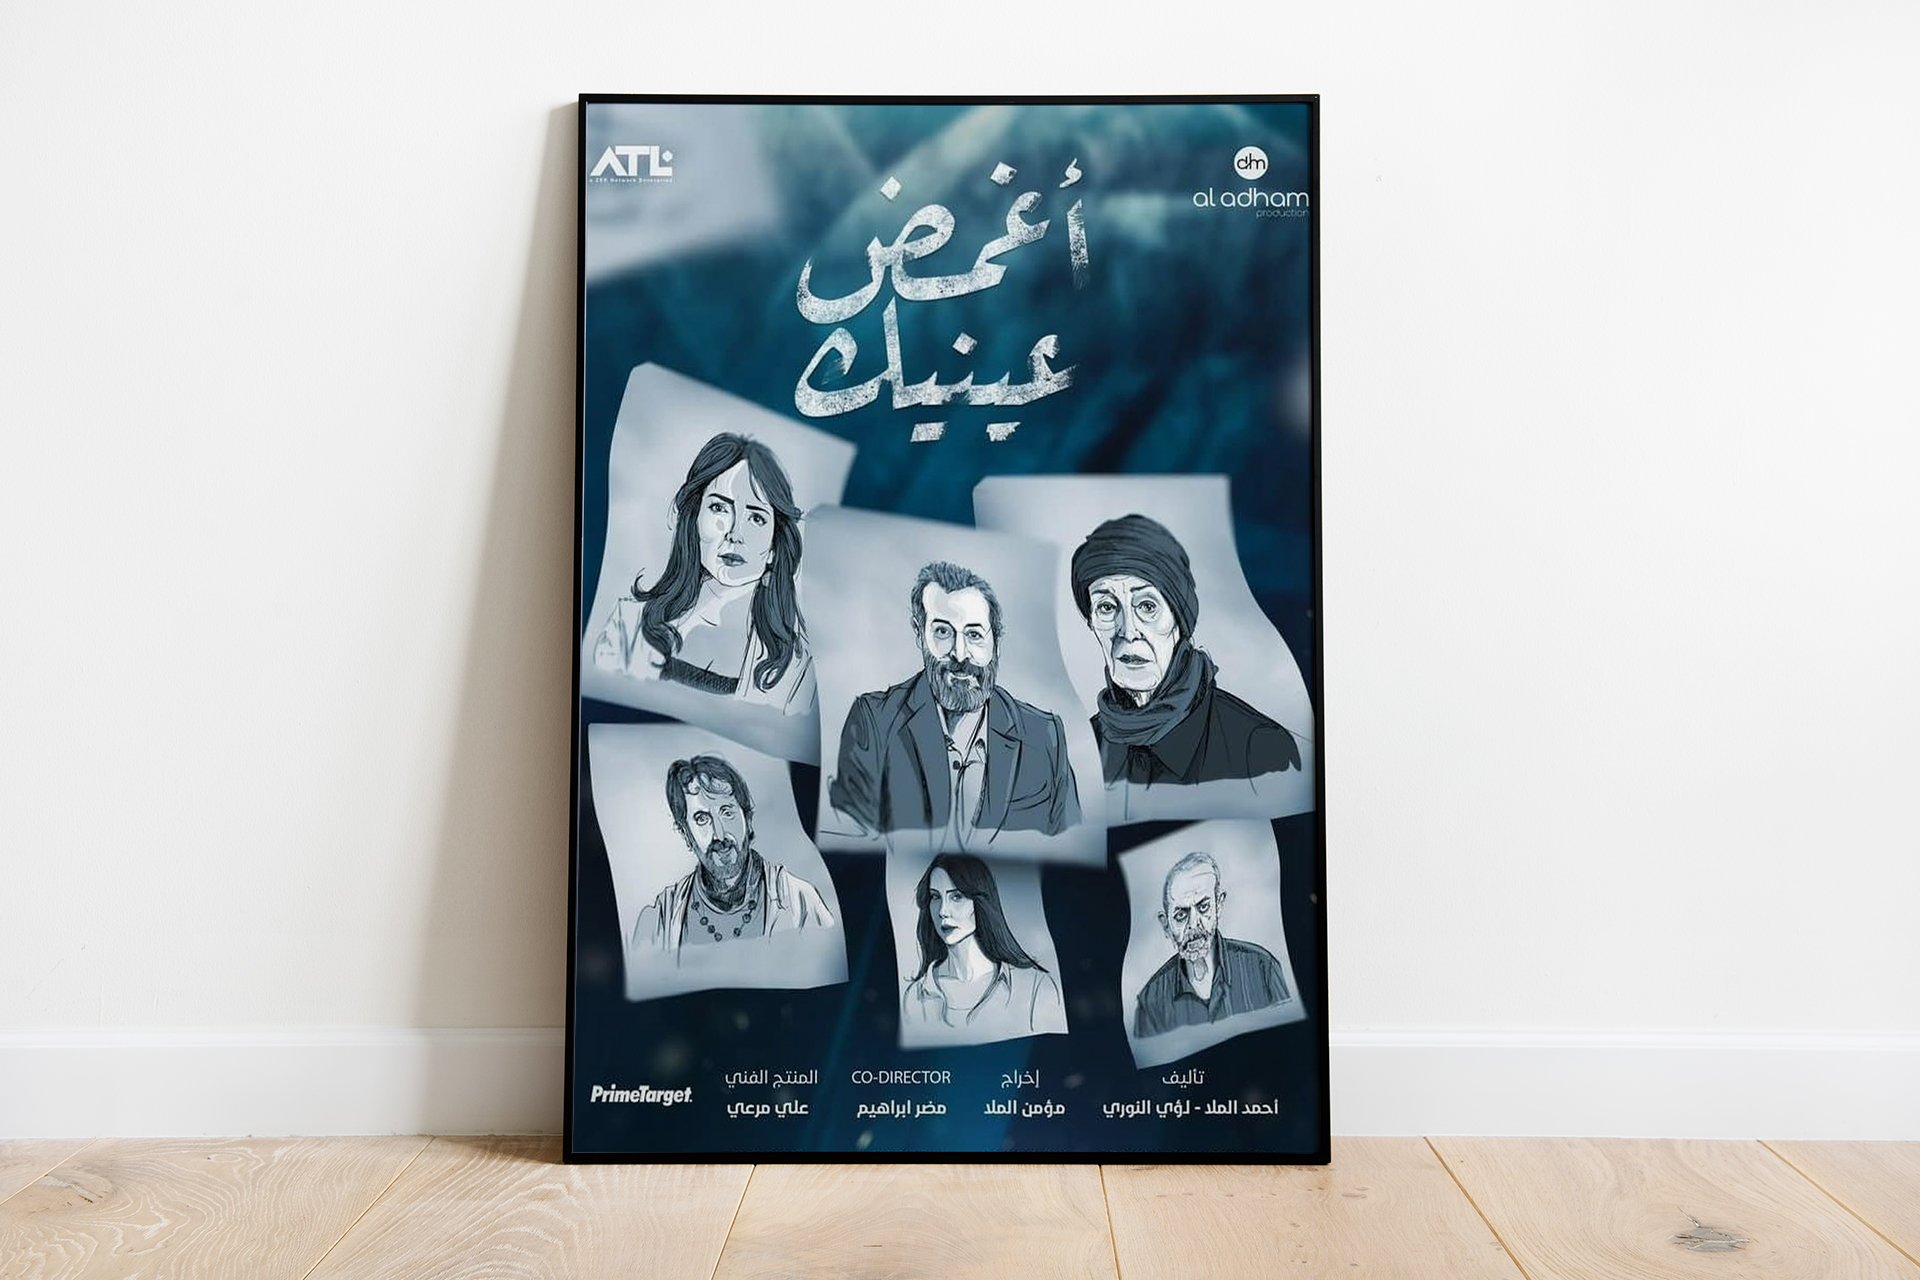 المخرج السوري مؤمن الملّا: مسلسل “أغمض عينيك” هو الوجه الأبيض في حياتنا | فن – البوكس نيوز